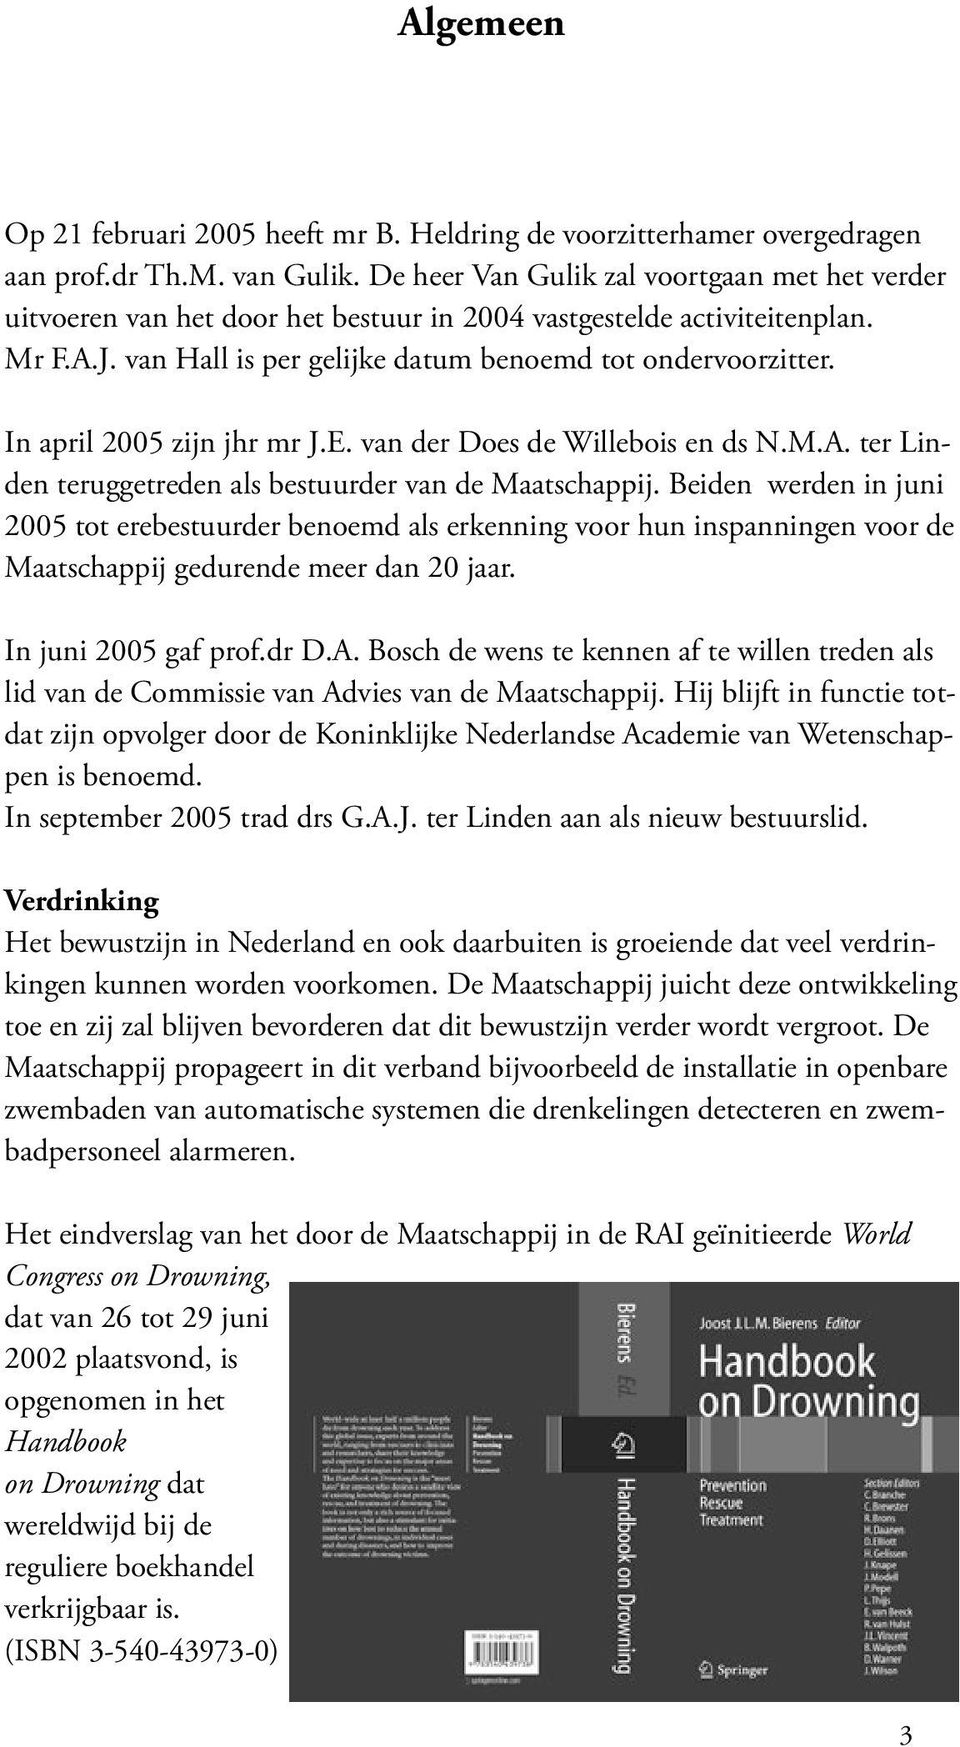 In april 2005 zijn jhr mr J.E. van der Does de Willebois en ds N.M.A. ter Linden teruggetreden als bestuurder van de Maatschappij.